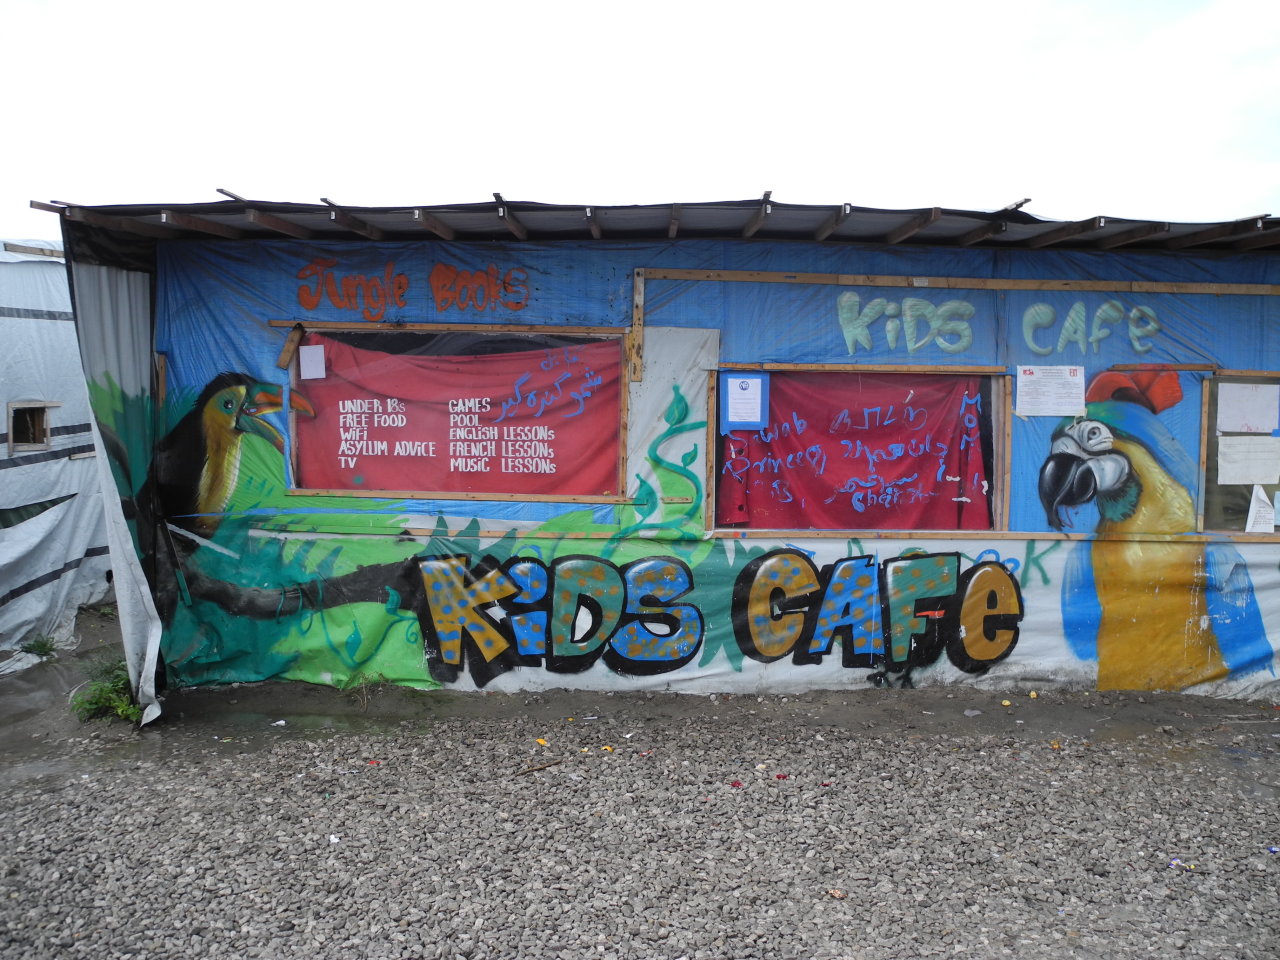 Das Kids Café im Gewerbeviertel des New Jungle war ein informelles Jugendzentrum mit kostenlosem Zugang zu WLAN, Getränken, Nahrung, Informationen und Spielen. (Foto: Oktober 2016)